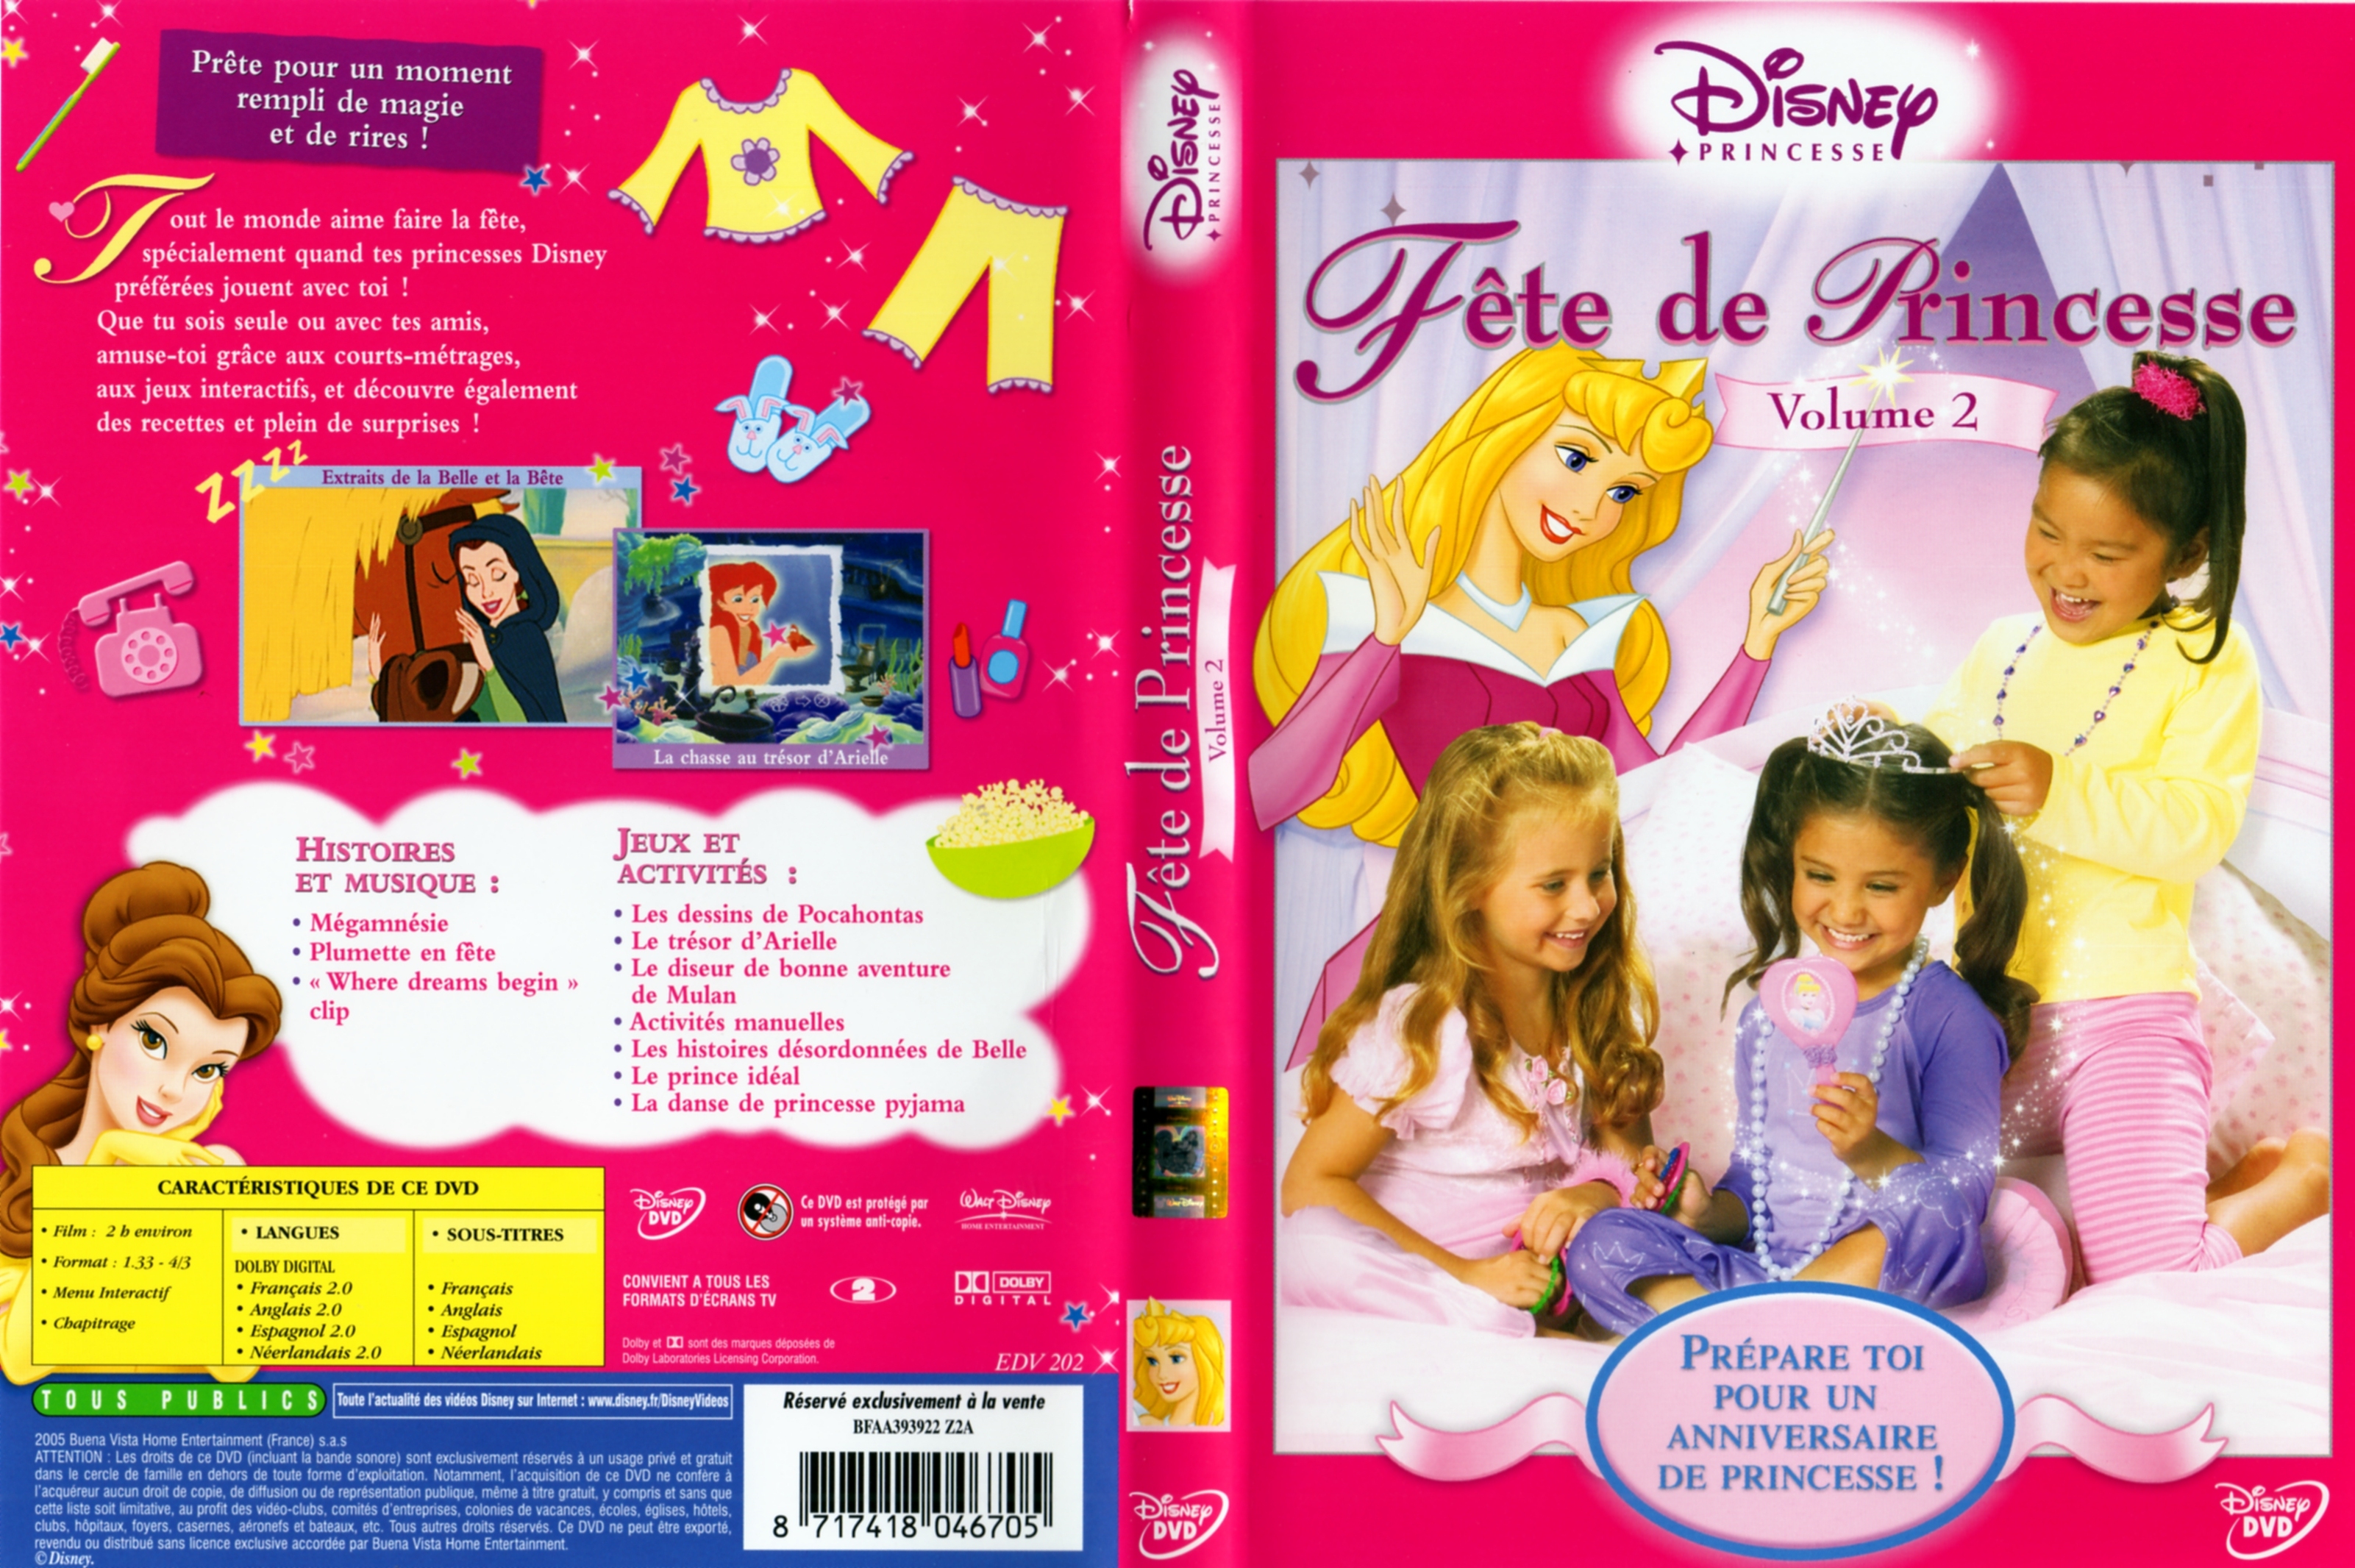 Jaquette DVD Fete de Princesse vol 2